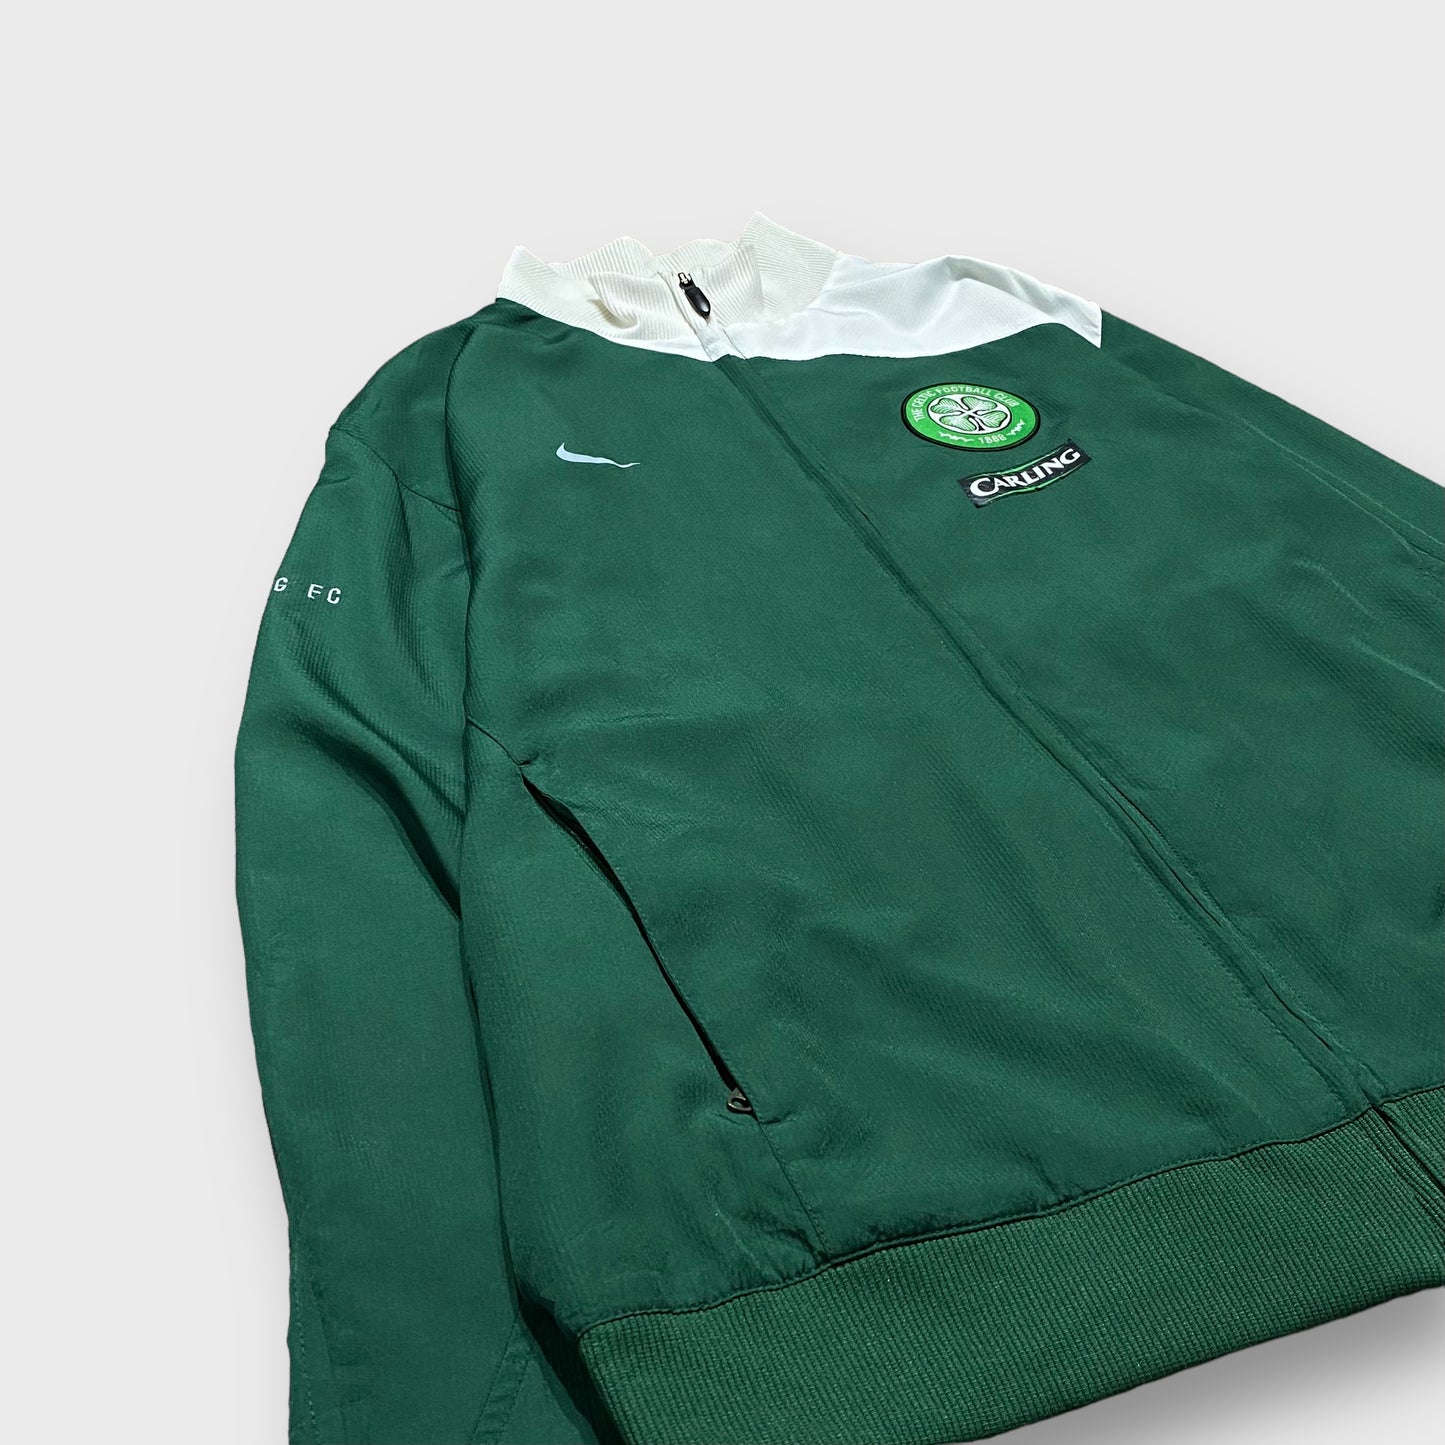 00's "NIKE" Celtic Football Club team nylon jacket